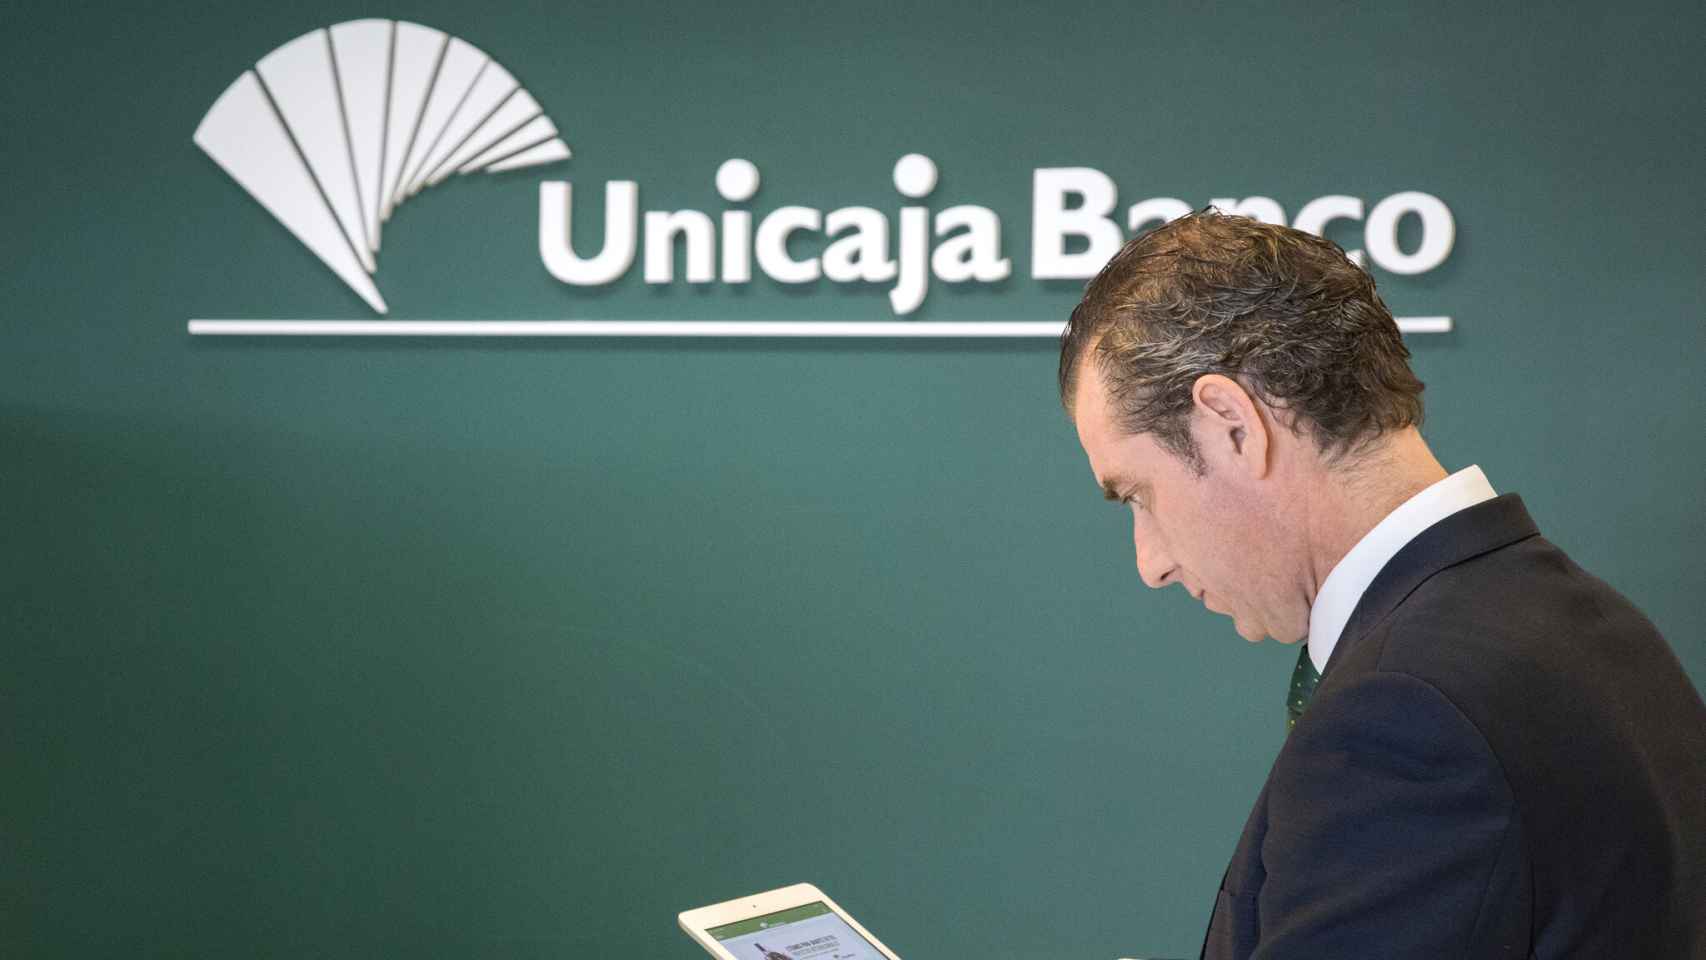 Unicaja Banco pone en marcha un servicio específico para ayudar a las pymes y autónomos en su transición al entorno digital